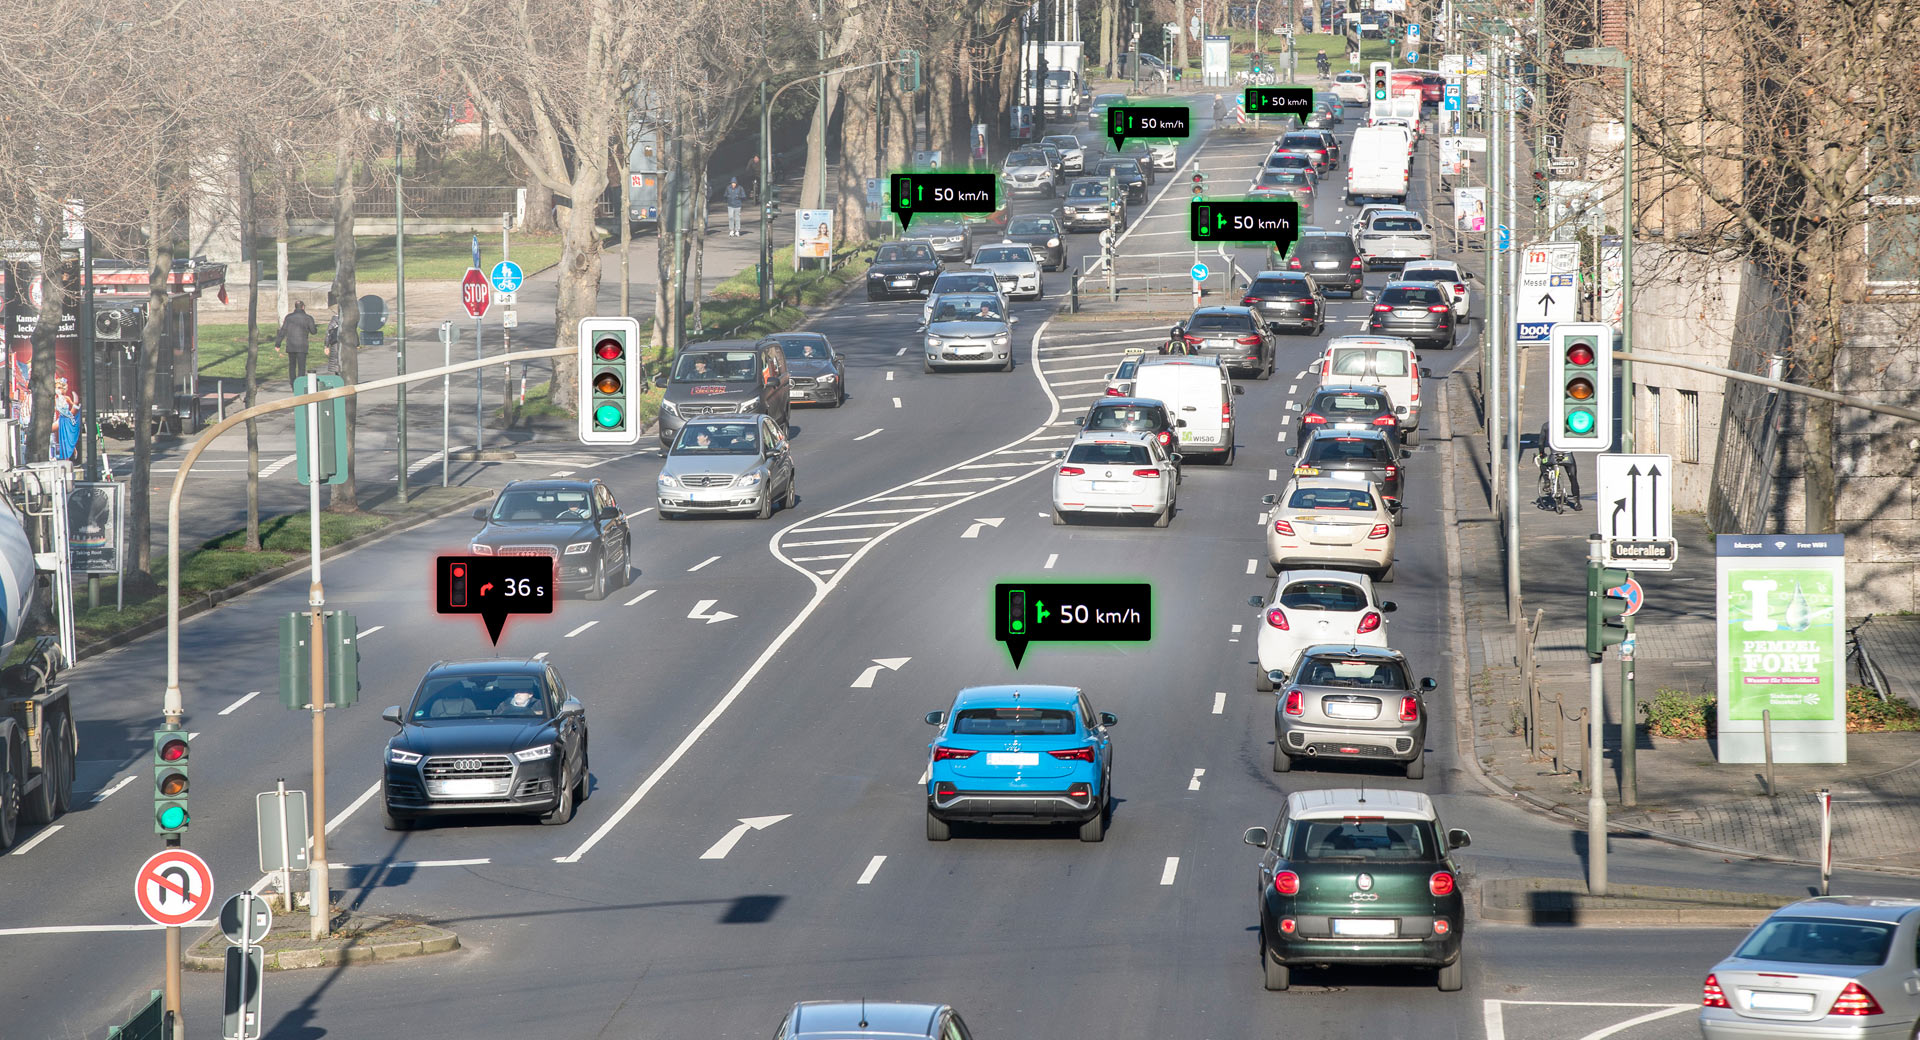 Hệ thống thông tin đèn giao thông của Audi - The Audi Traffic Light Information system.